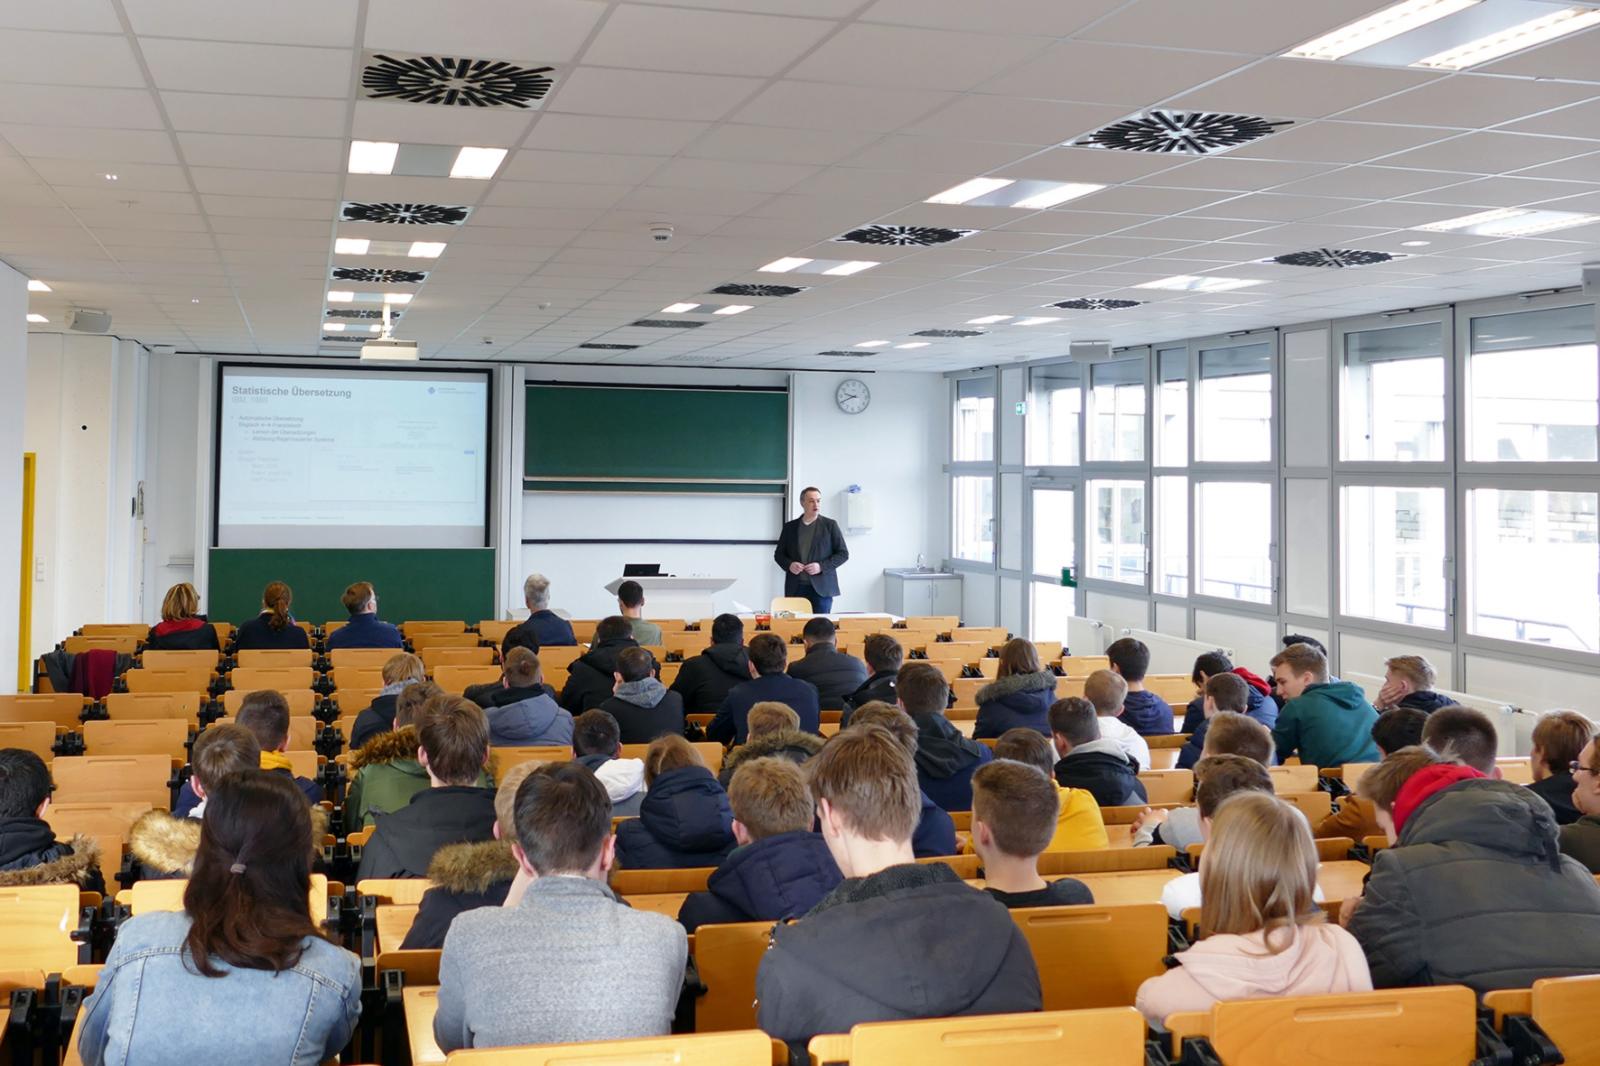 Vorlesungsatmosphäre im Hörsaal – Prof. Dr. Jürgen te Vrugt gab den Schülern einen Einblick in das Thema Künstliche Intelligenz. (Foto: FH Münster/Jana Schiller)